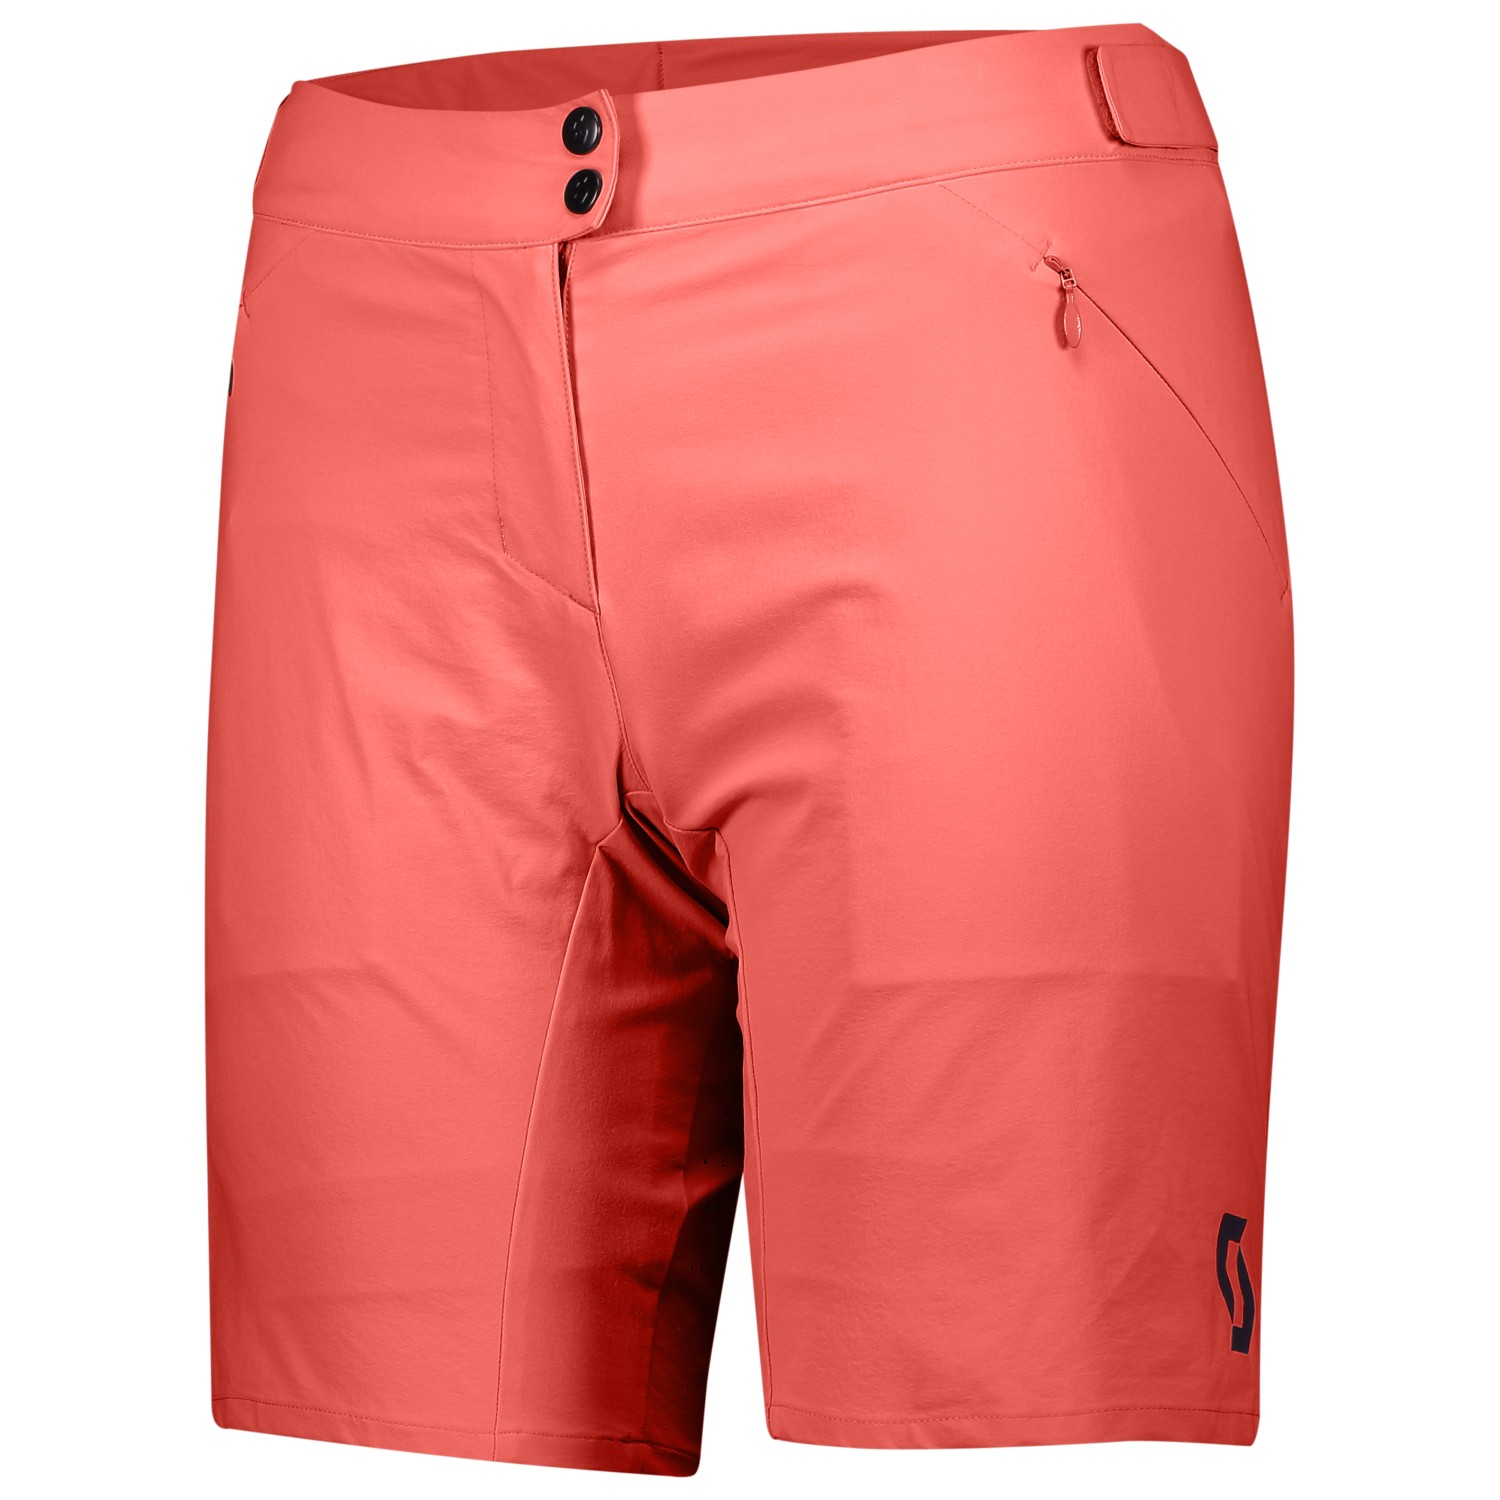 Велосипедные шорты Scott Women's Shorts Endurance Loose Fit with Pad, цвет Astro Red пазл origami лесные тропинки с плакатом 02854 35 дет